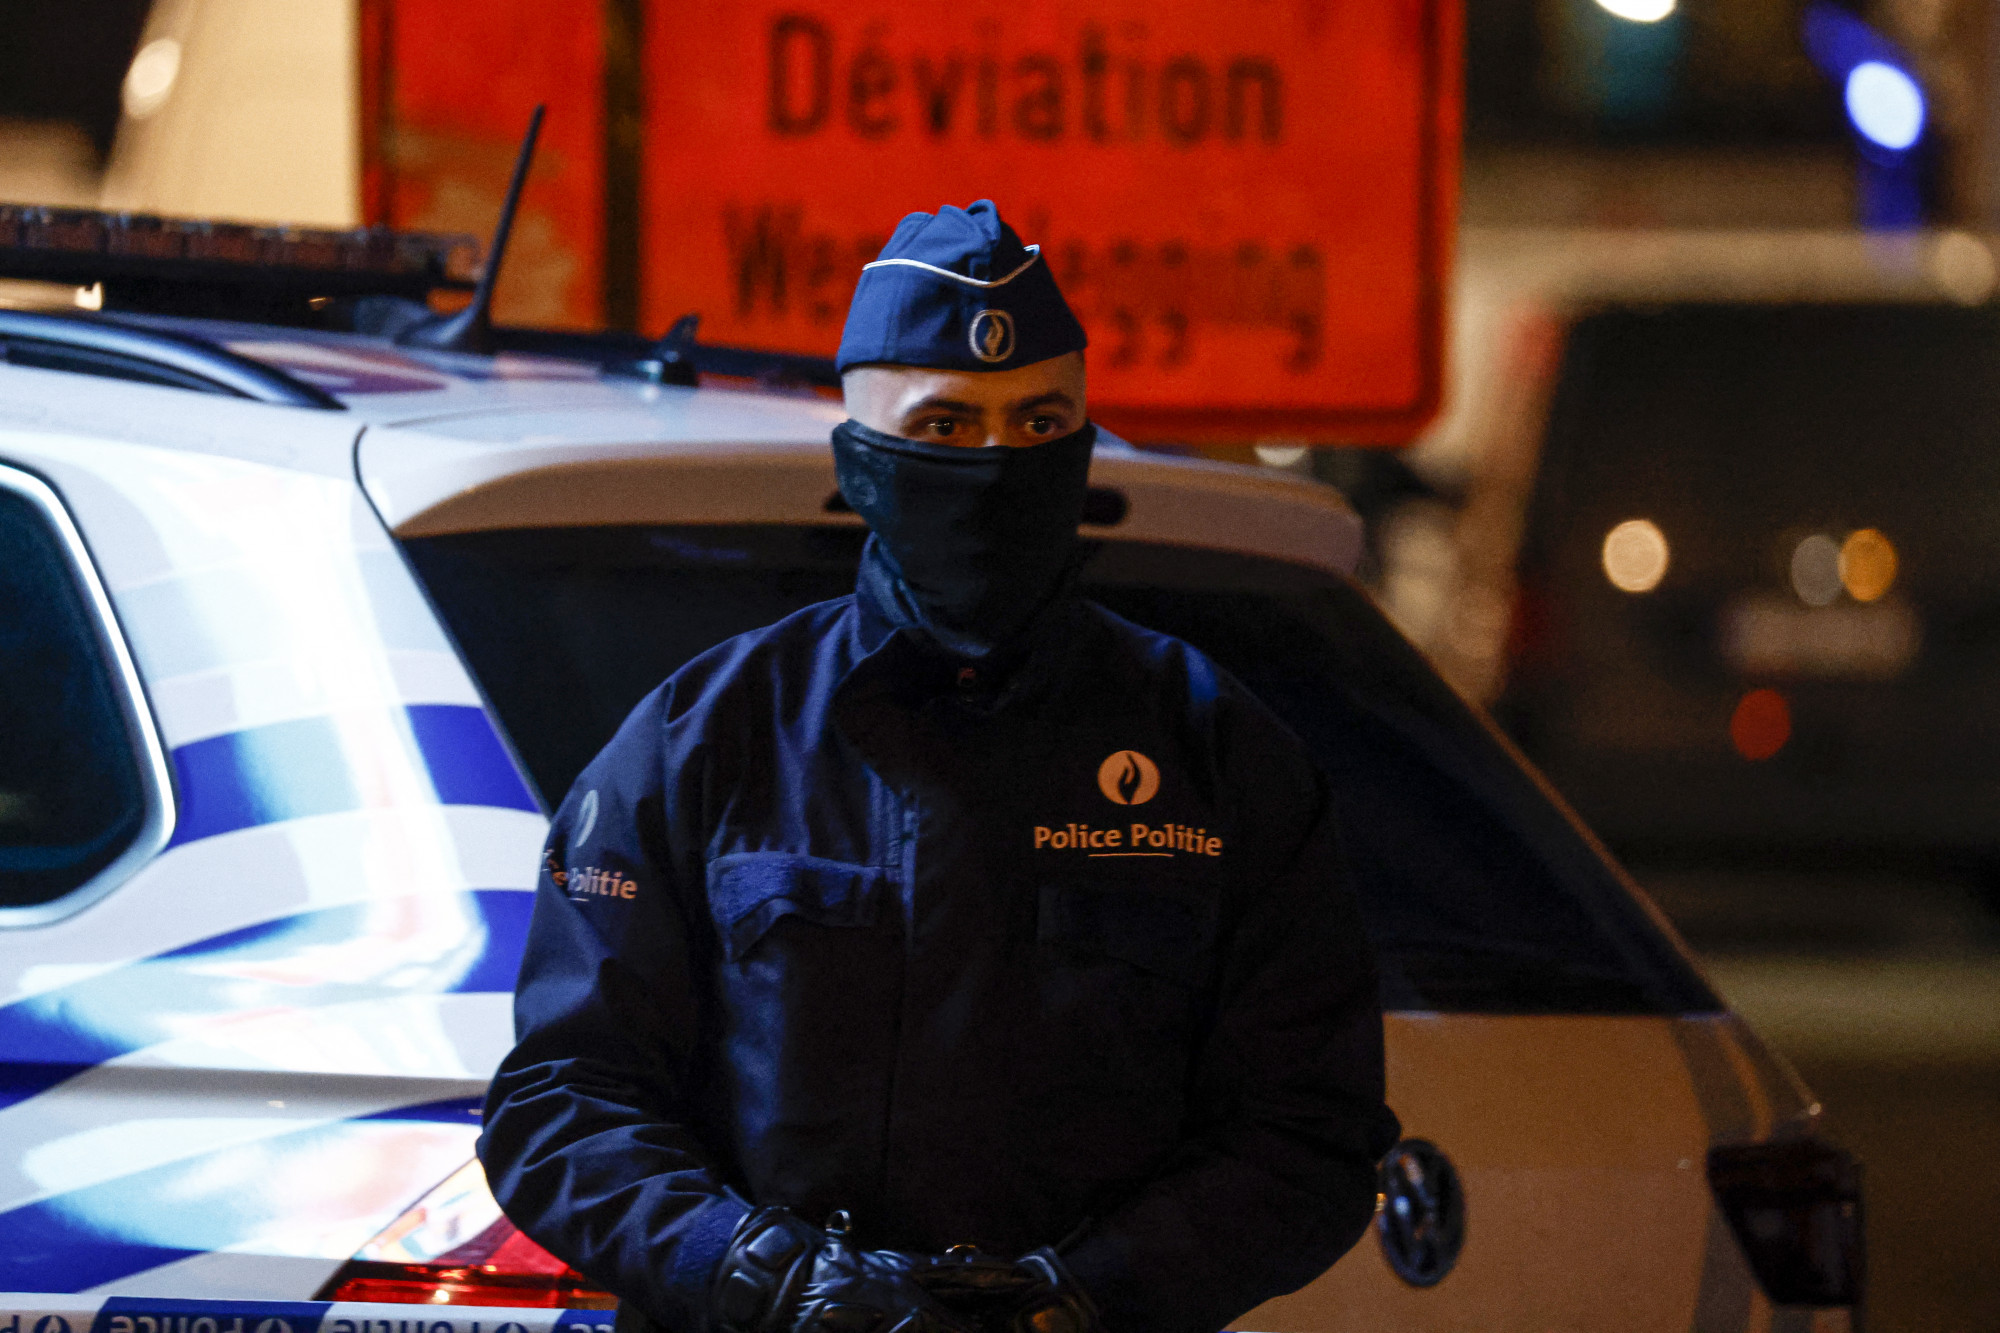 Rendőrökre támadt egy férfi Brüsszelben, egyikük meghalt